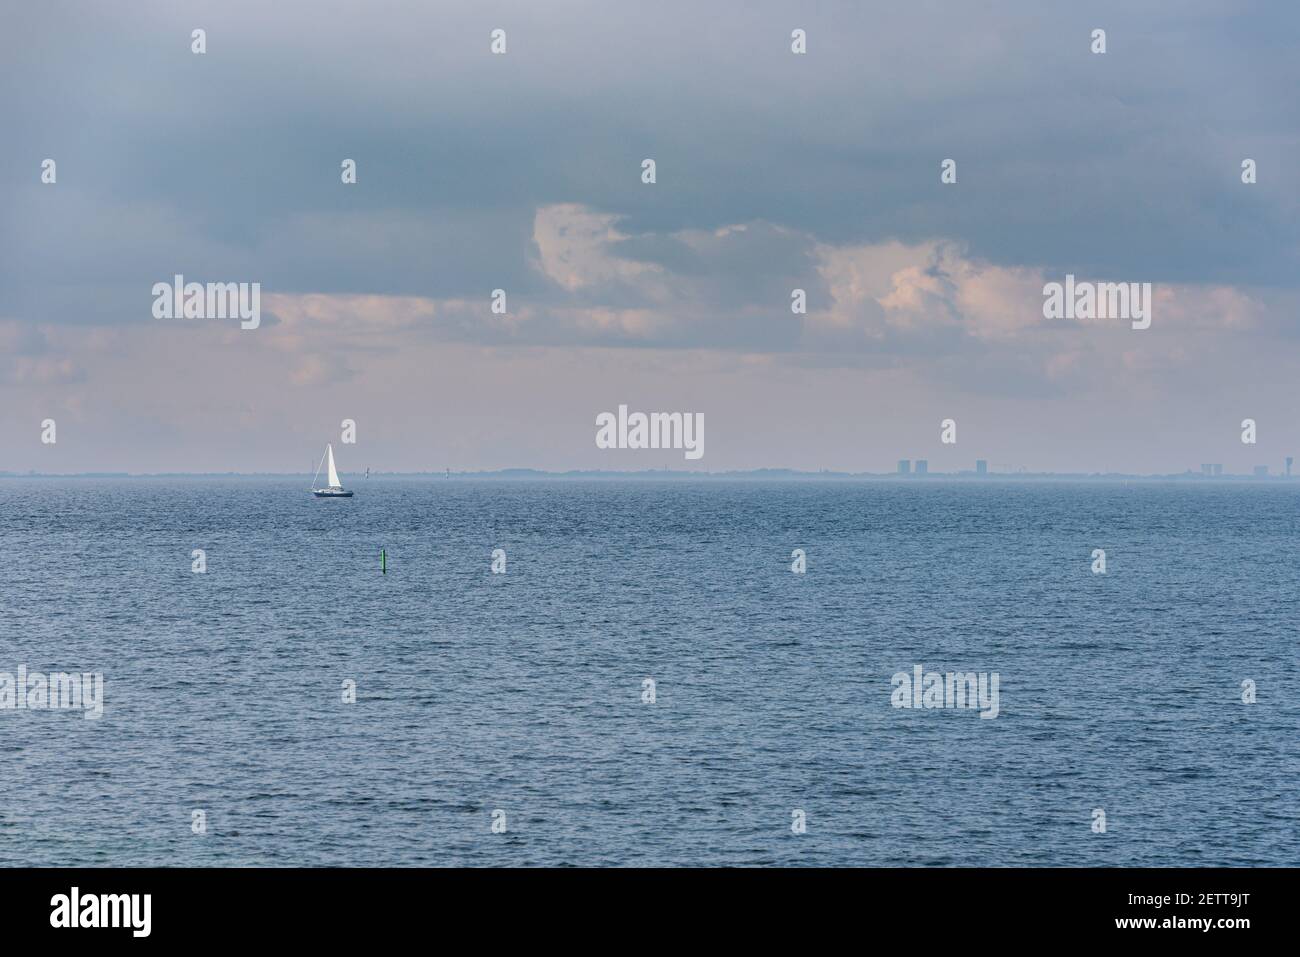 La barca a vela Lone in mare in acque calme (Strait di Oresund) su un cielo nuvoloso suggerisce relax. La barca a vela nell'oceano trasmette tranquillità e serenità Foto Stock